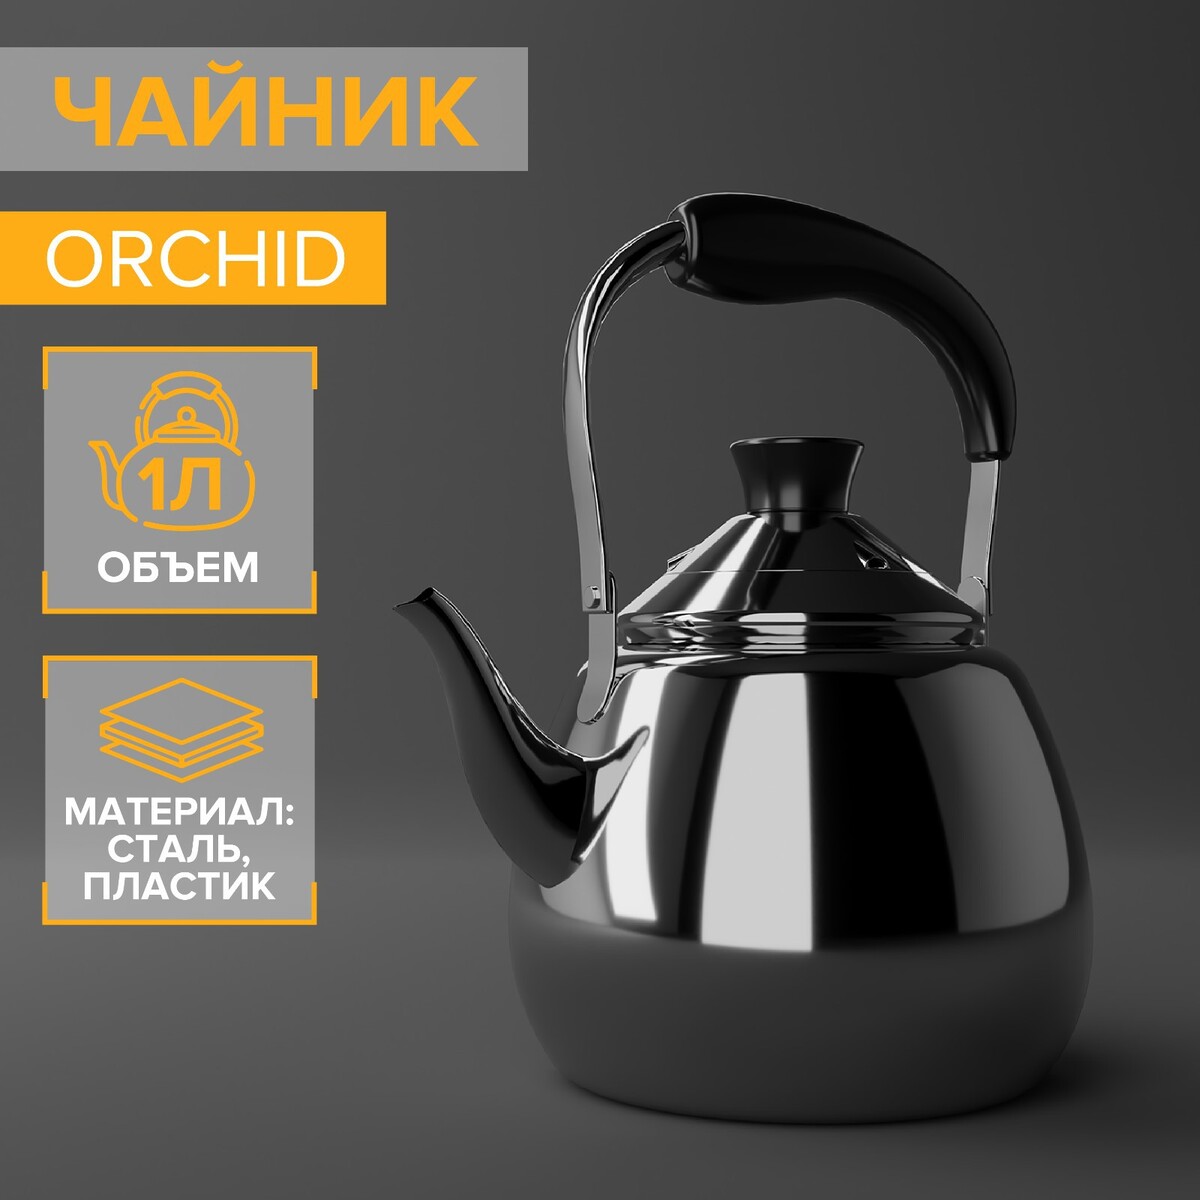 Чайник из нержавеющей стали orchid, 1 л, цвет серебряный cymbidium orchid